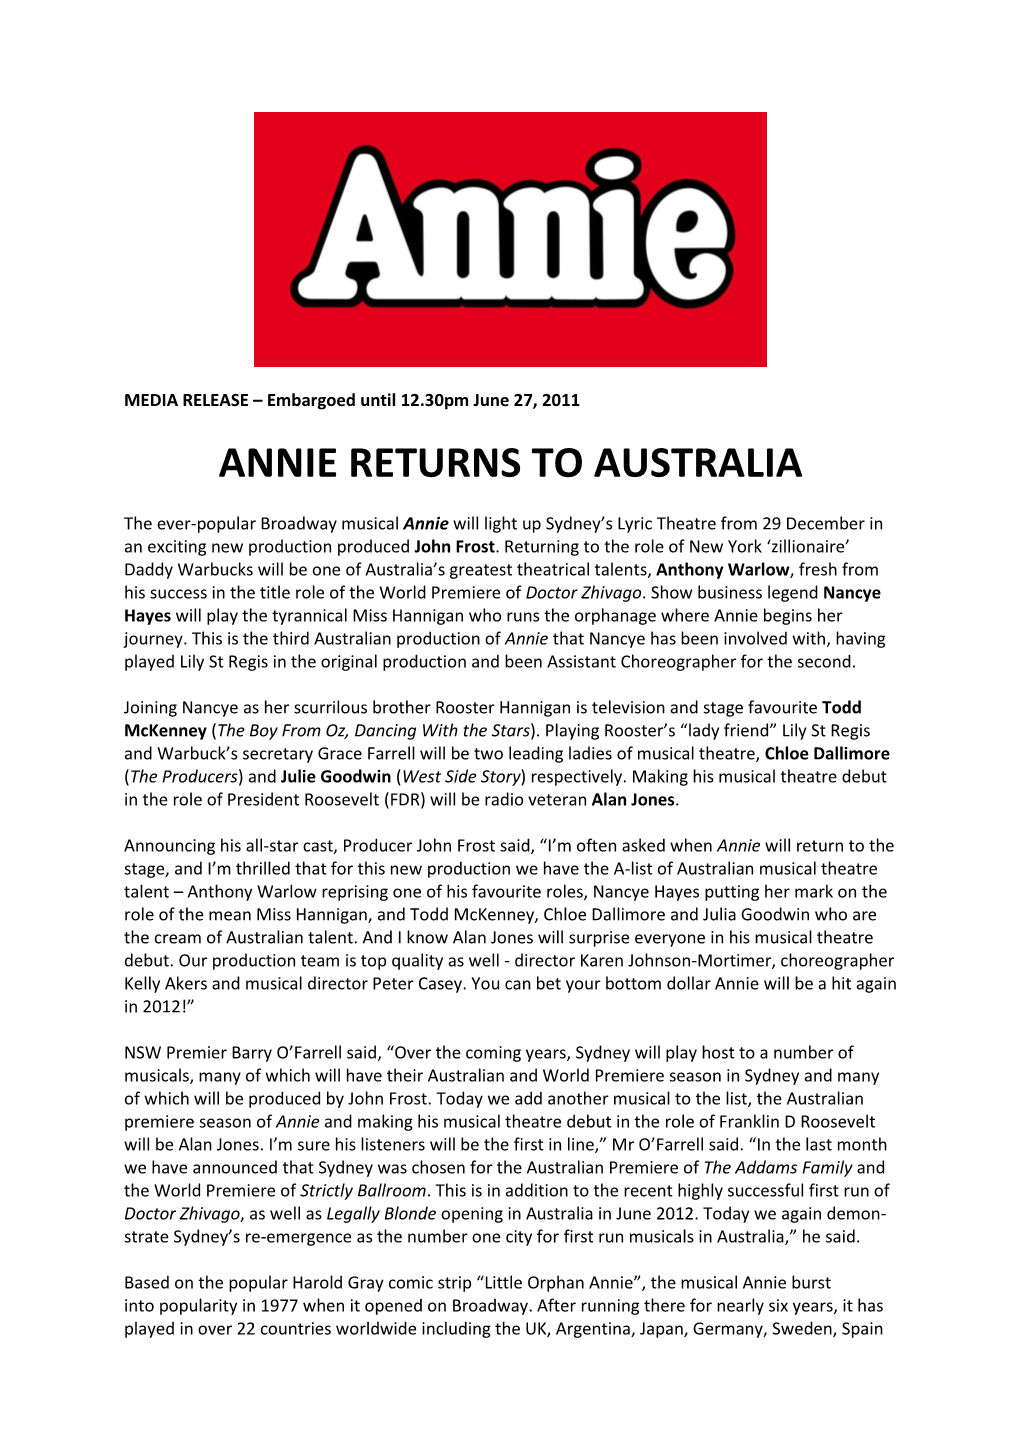 Annie Returns to Australia